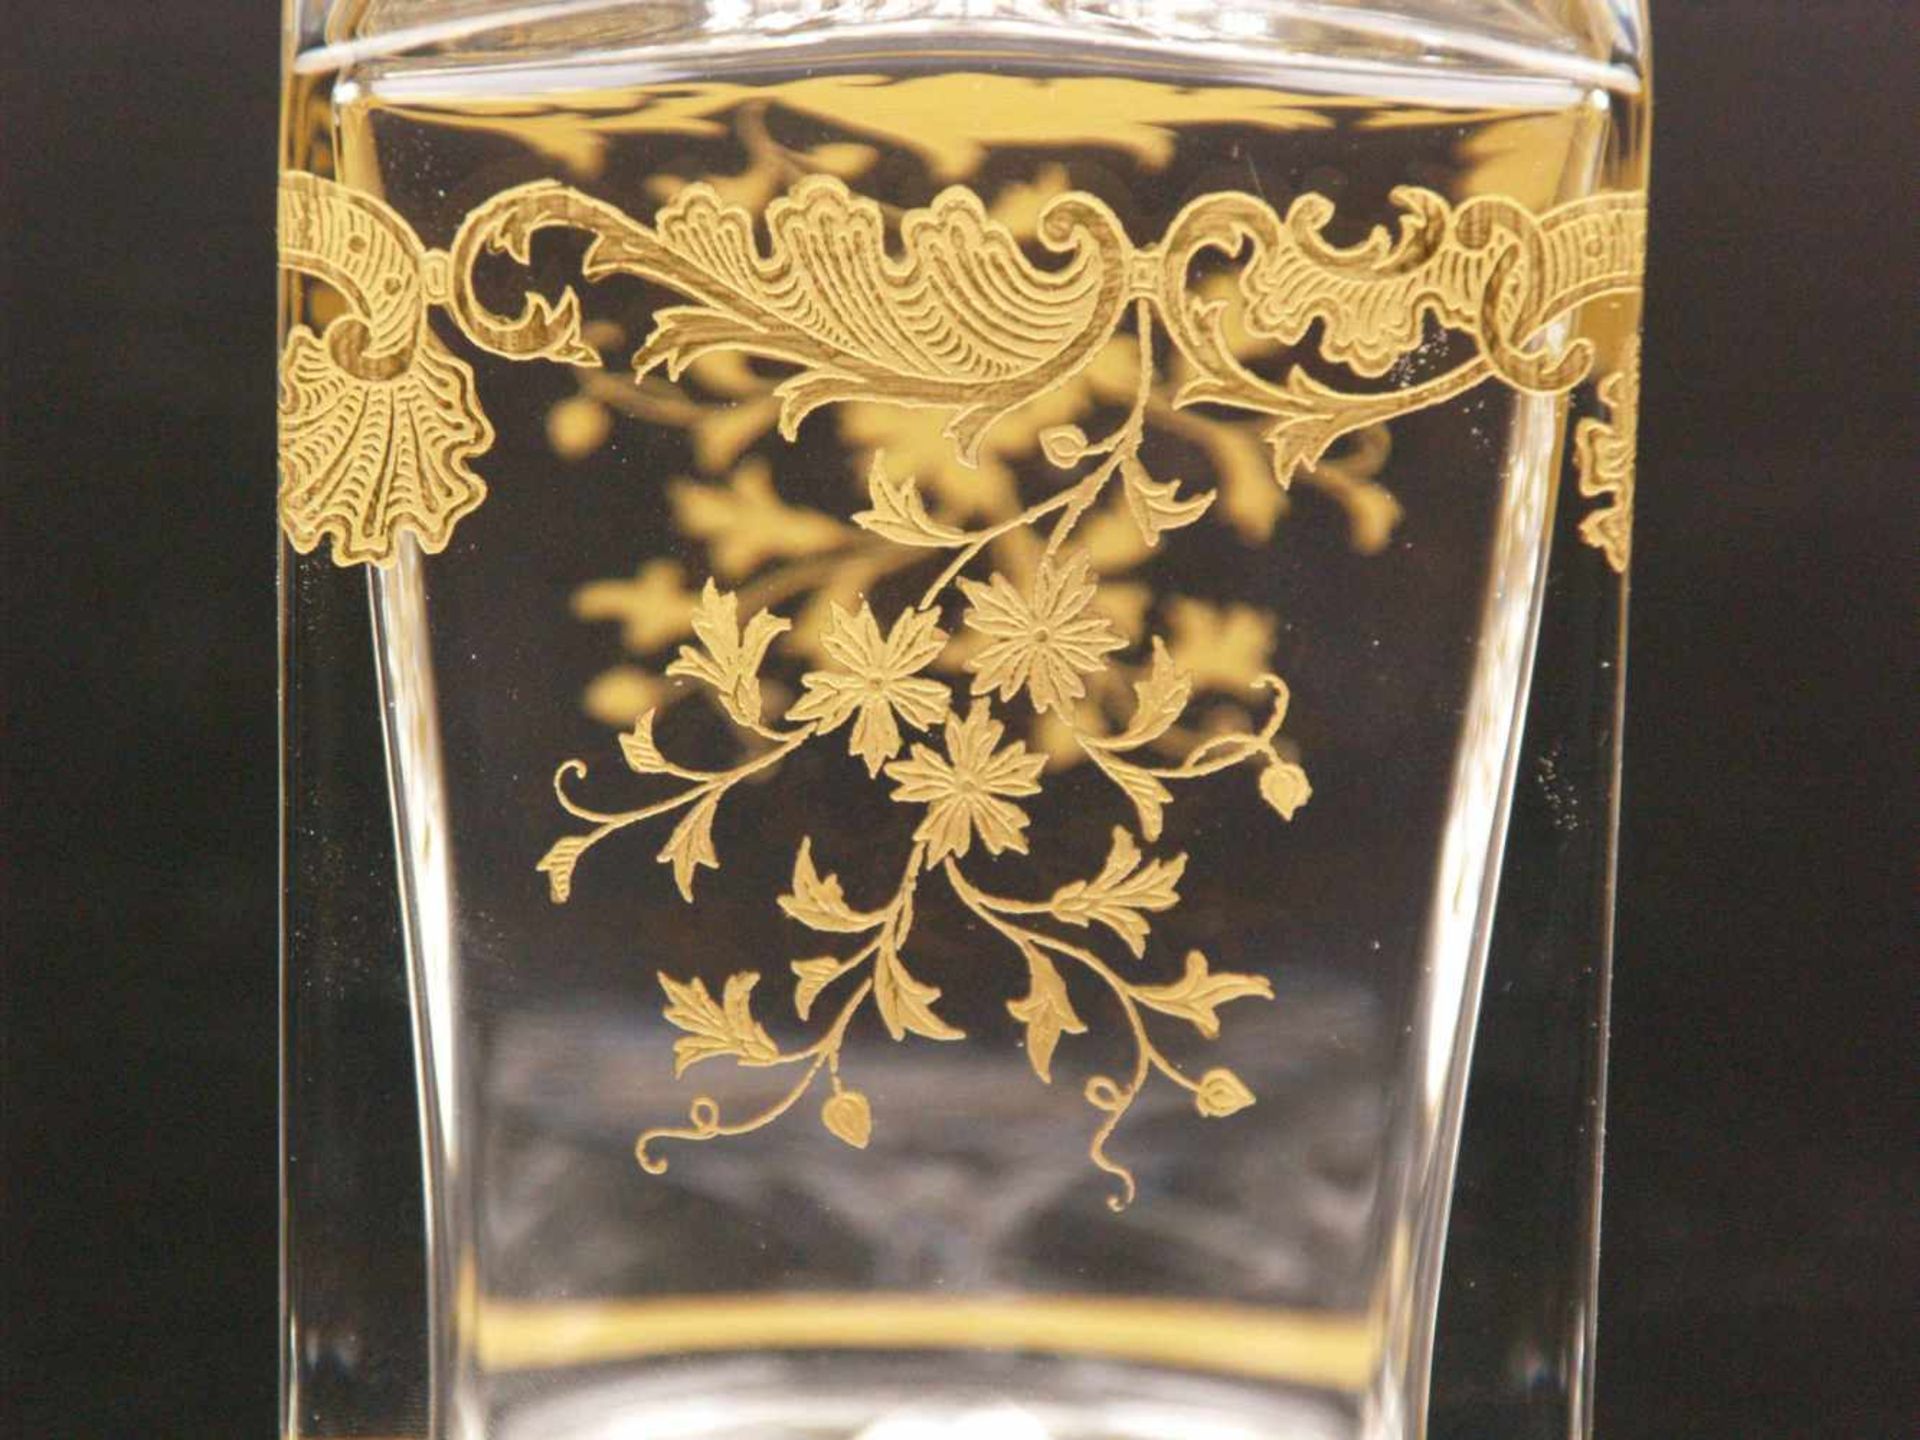 Whiskeykaraffe und 6 Gläser - Kristallmanufaktur Saint-Louis, Frankreich, farbloses Kristall, - Bild 4 aus 11